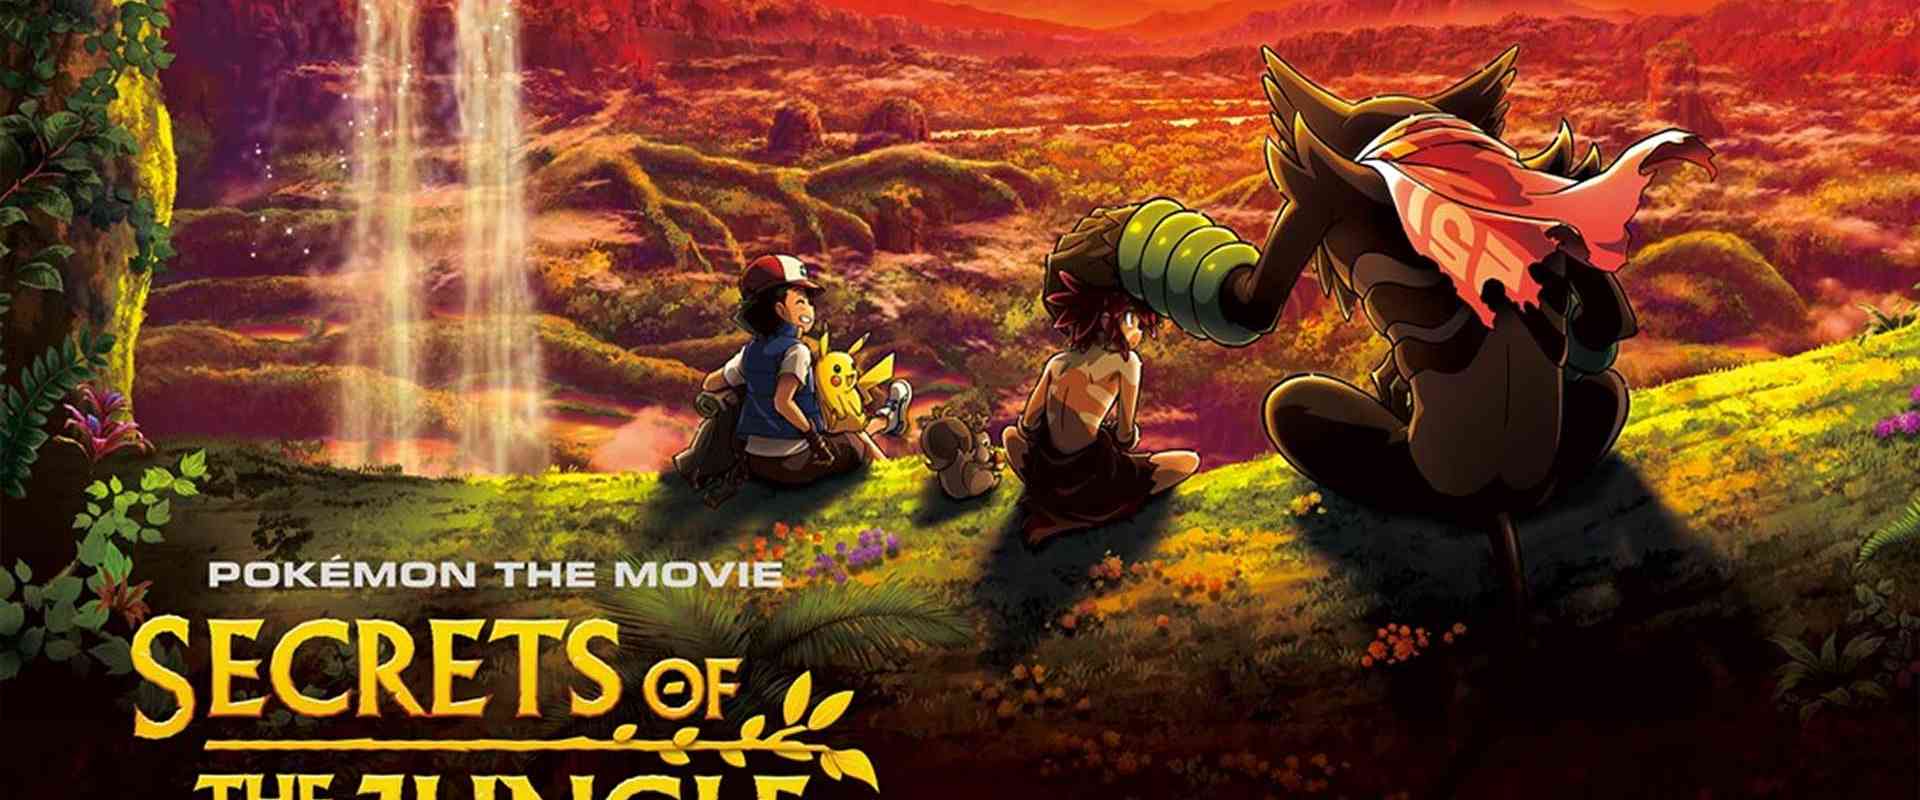 pokemon film secrets of the jungle